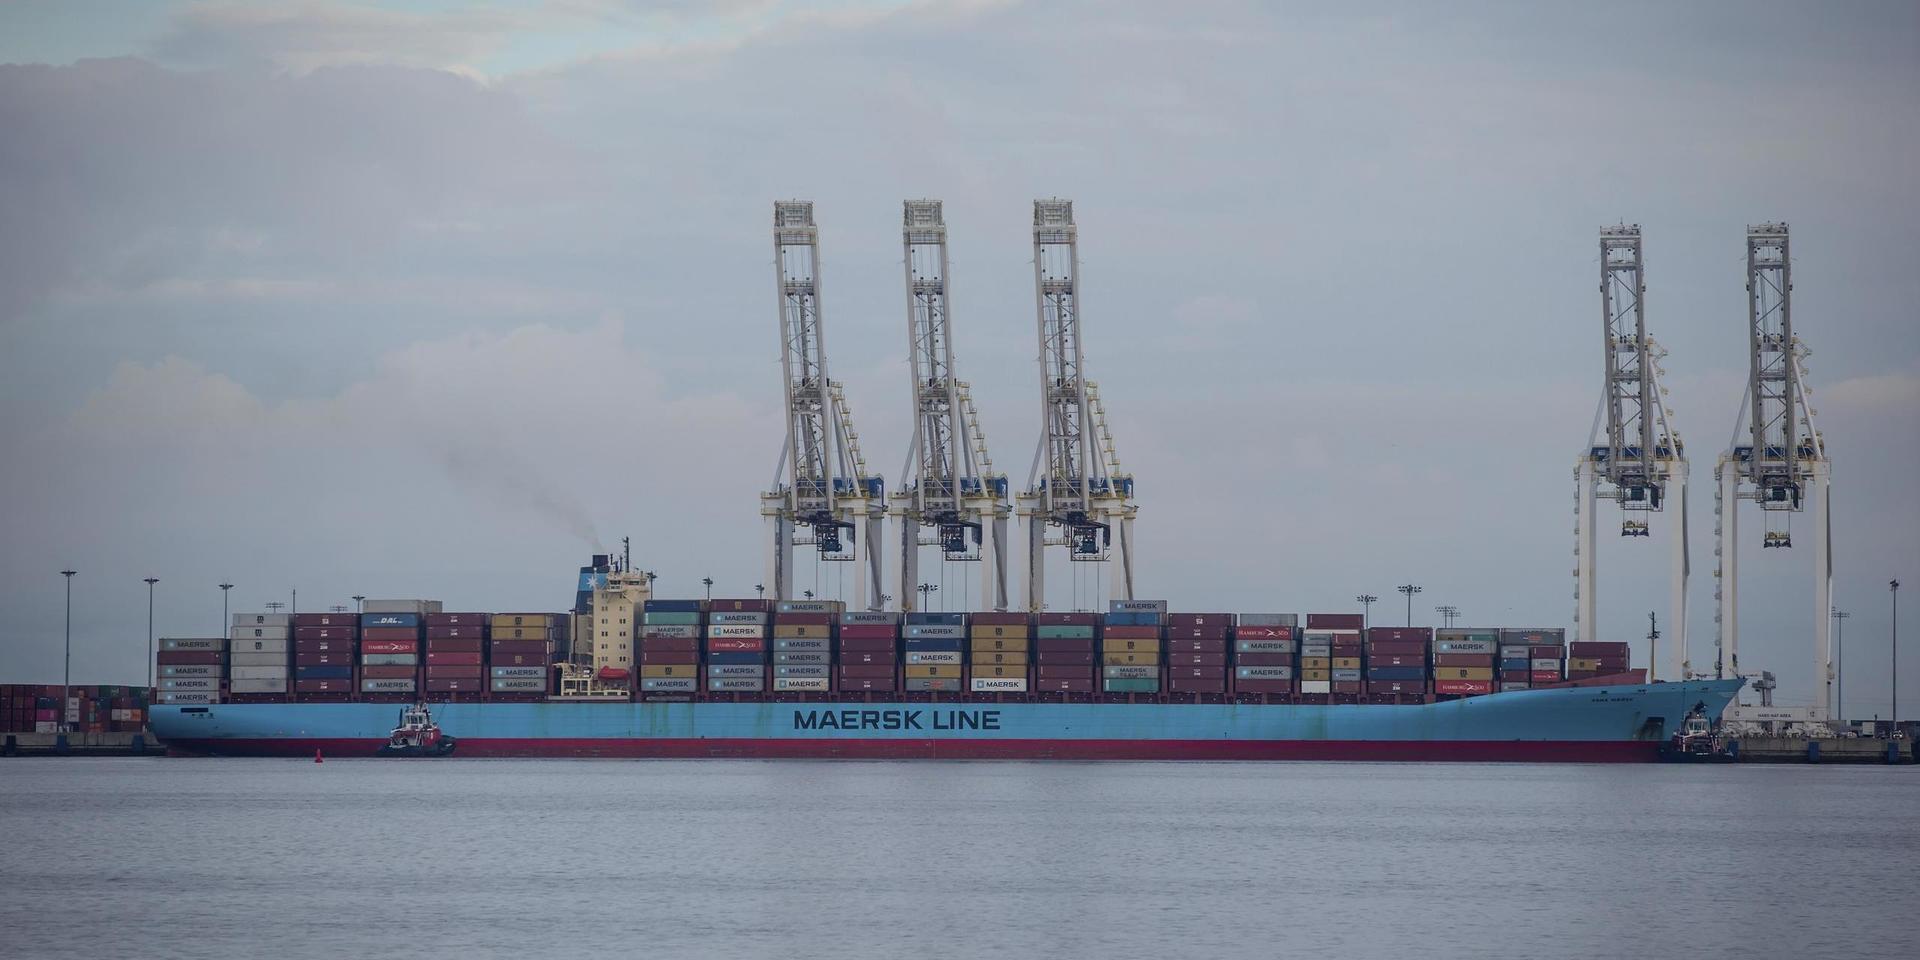 Världens största containerrederi, danska Møller-Mærsk, drabbades av en så kallad ransomwareattack 2017, vilket påverkade deras system.